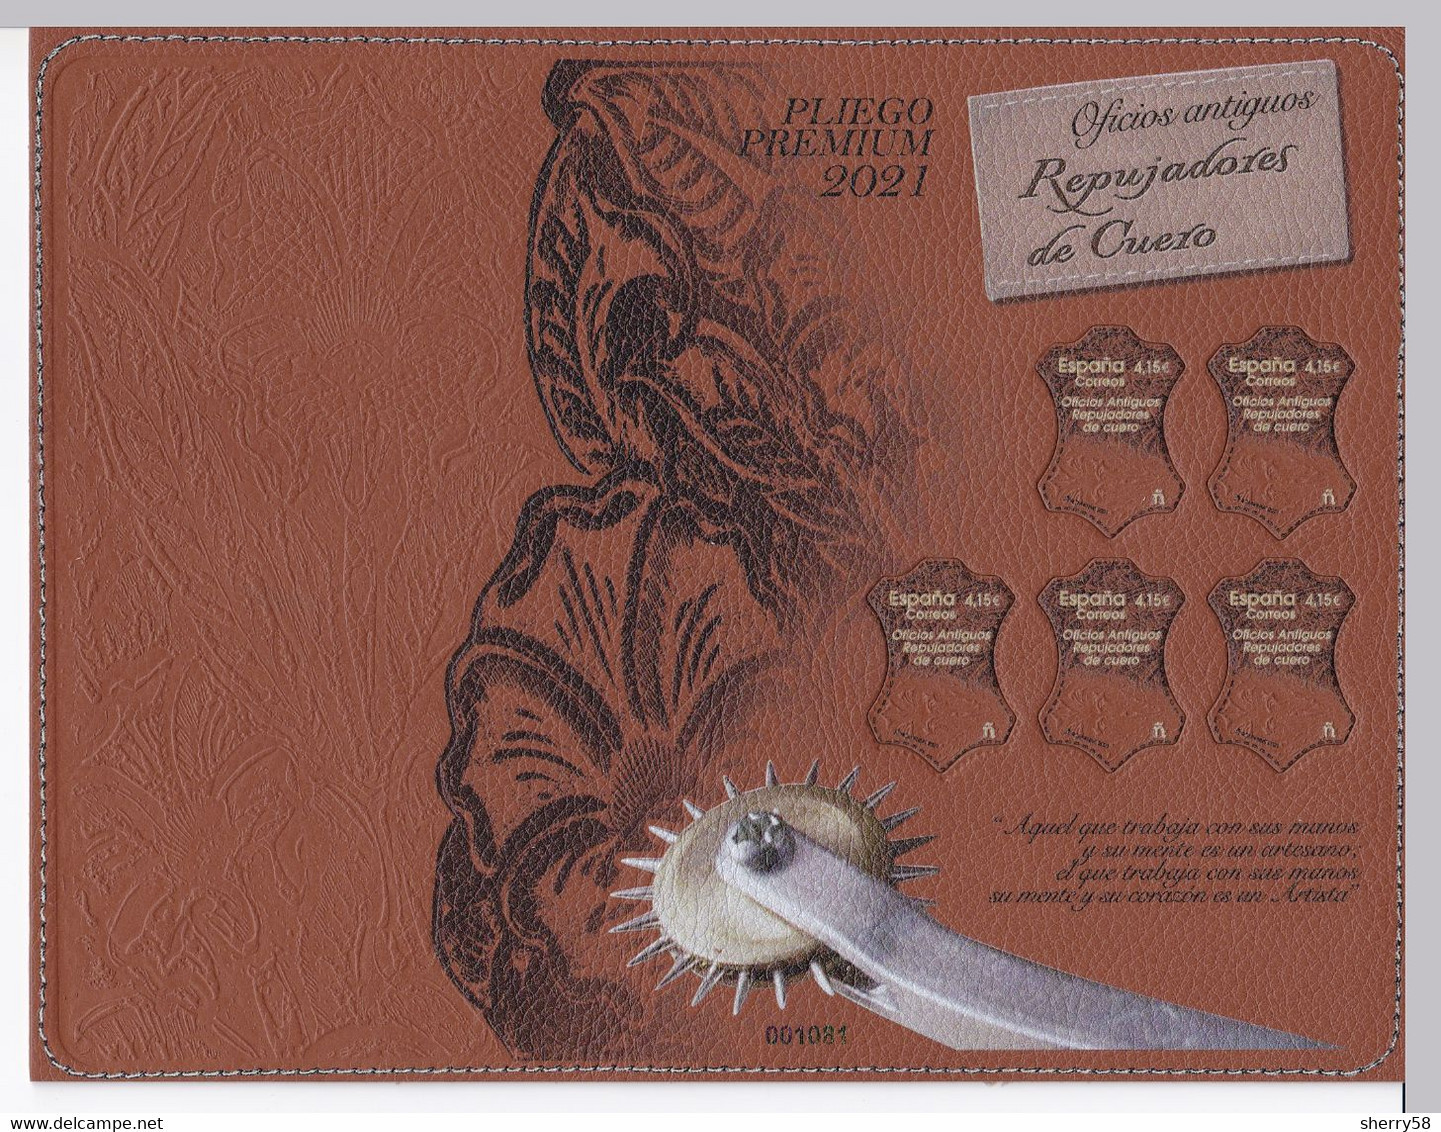 2021-ED. 5531 EN PLIEGO PREMIUM - Oficios Antiguos. Repujadores De Cuero. Sello De Cuero- NUEVO - Unused Stamps